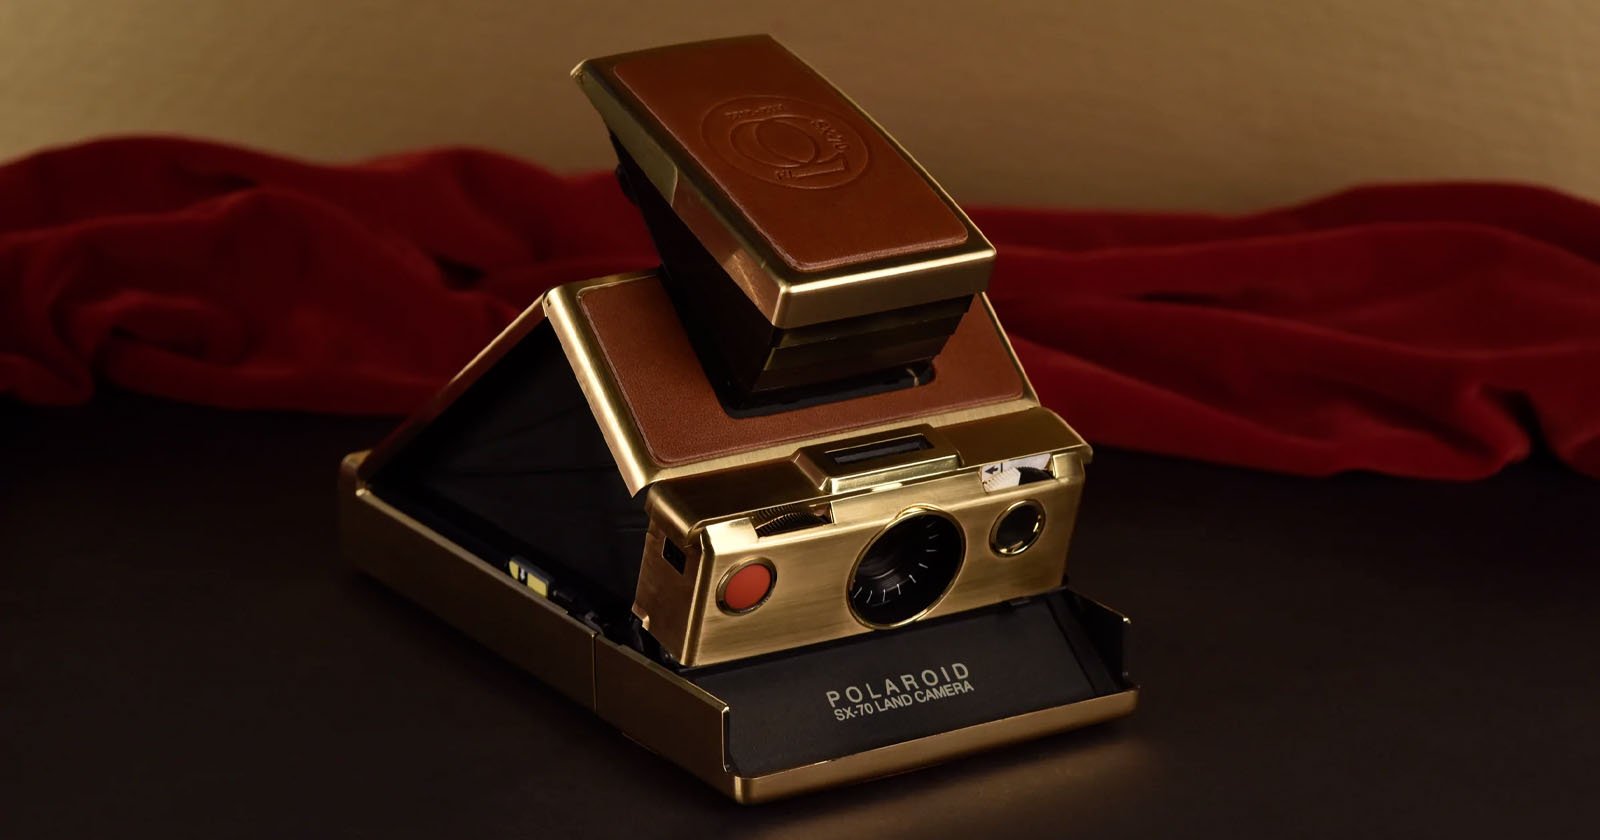 Polaroid SX-70 Original Chrome Instant Camera